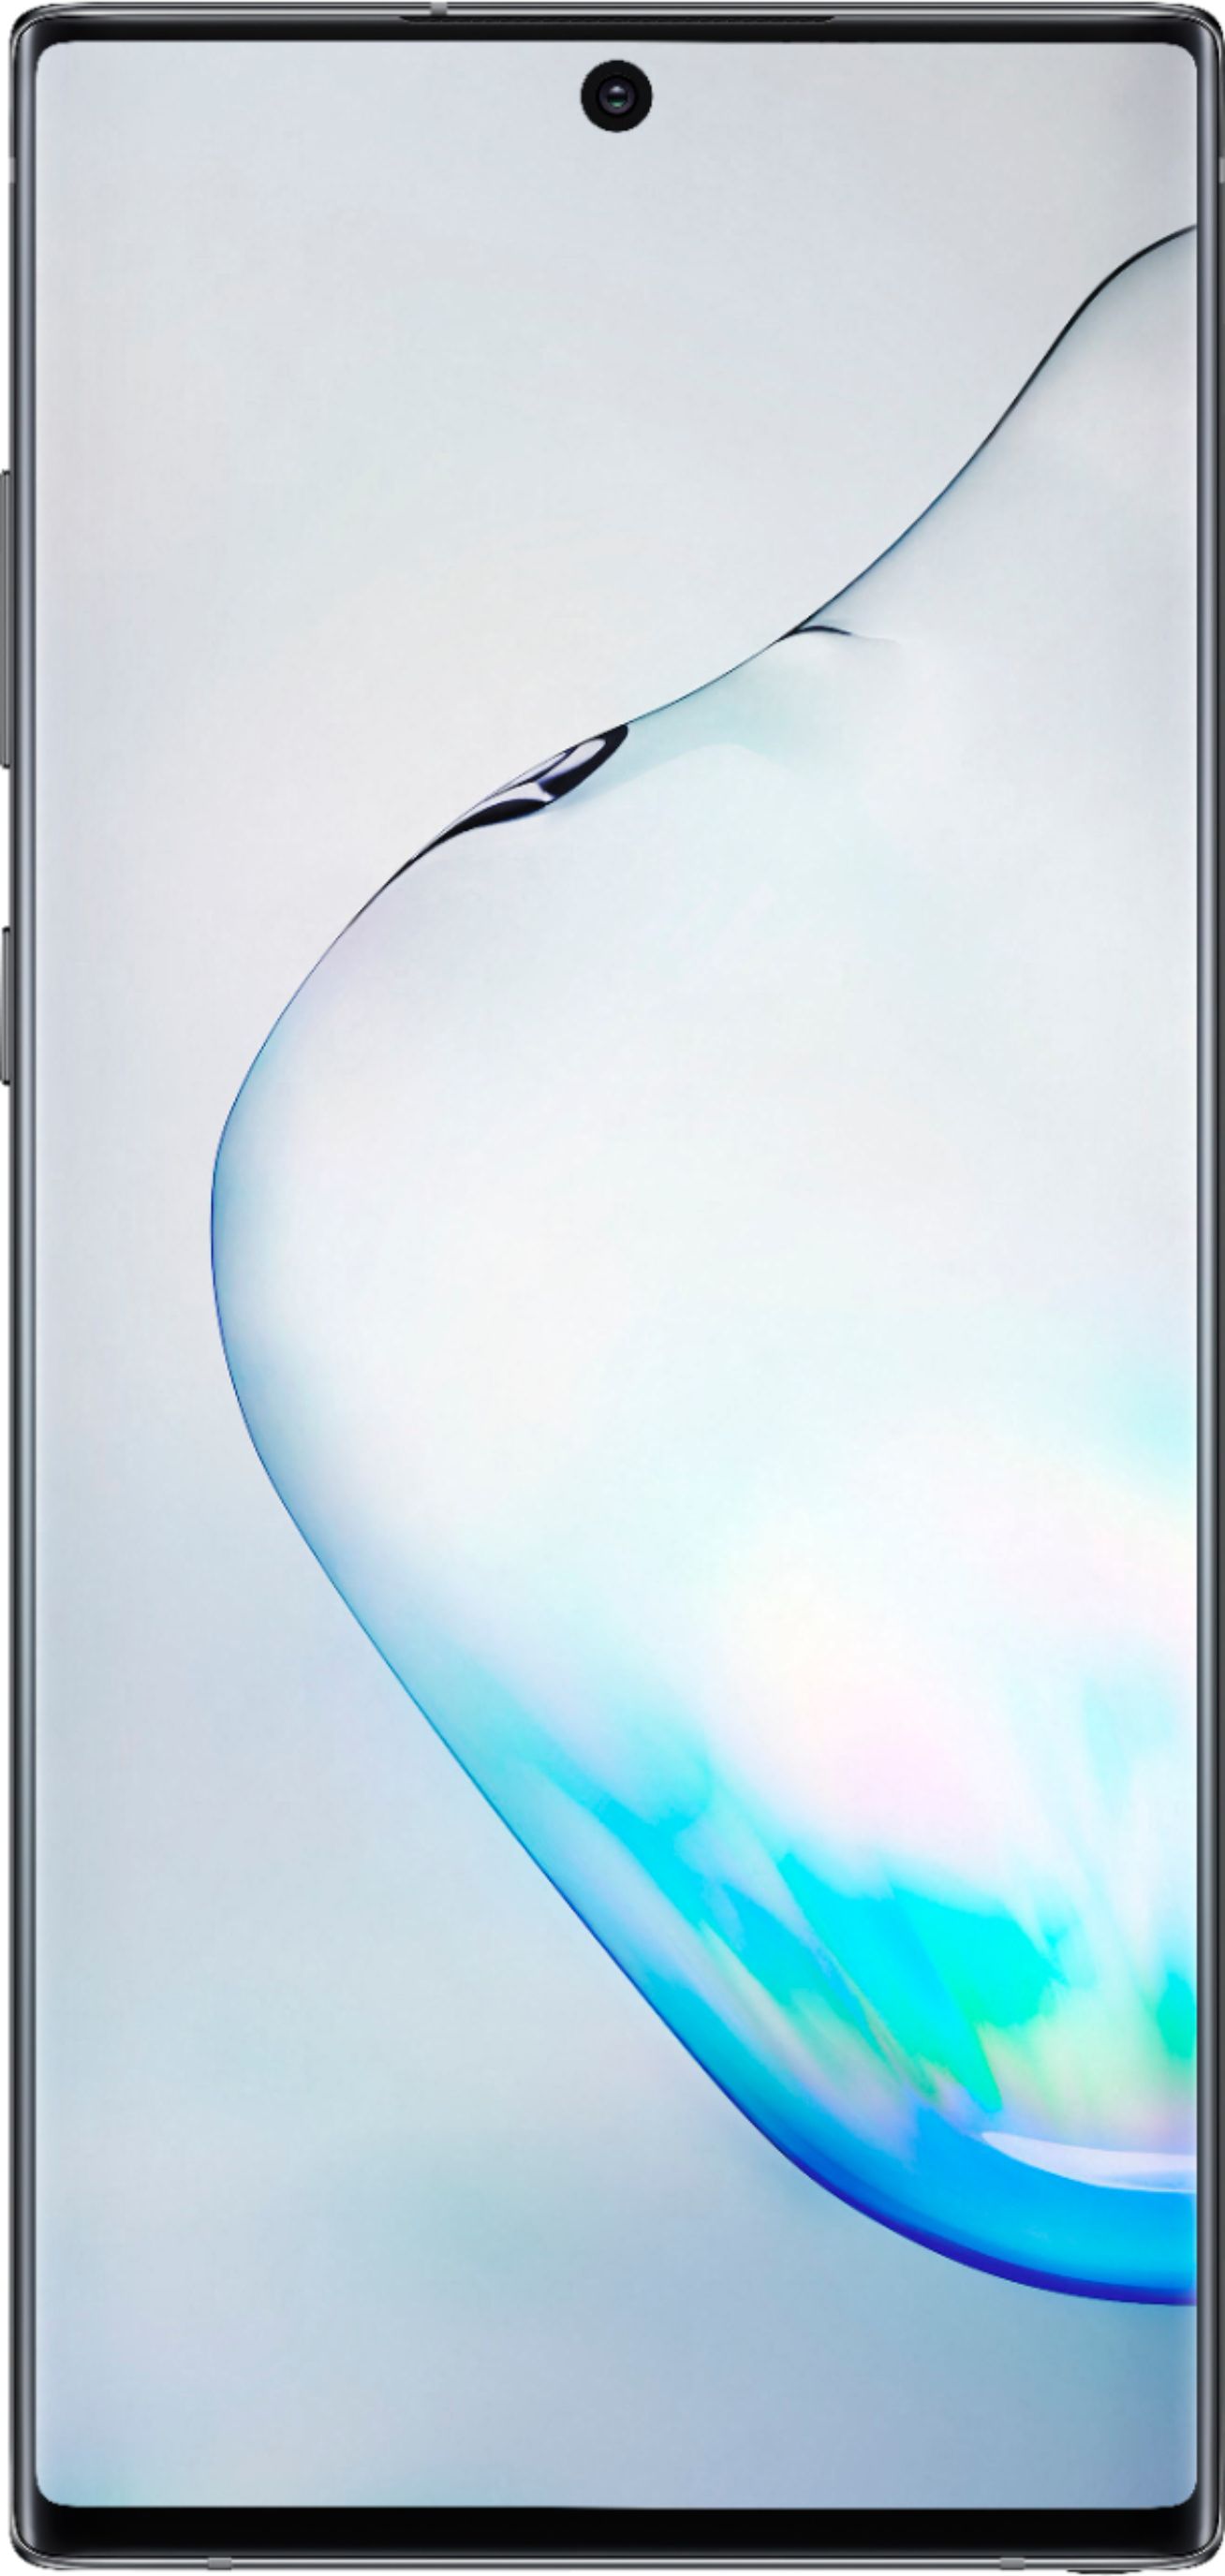  Samsung Galaxy Note 10 Plus N975U 256GB Factory Unlocked  Smartphone (Renewed) : Cell Phones & Accessories